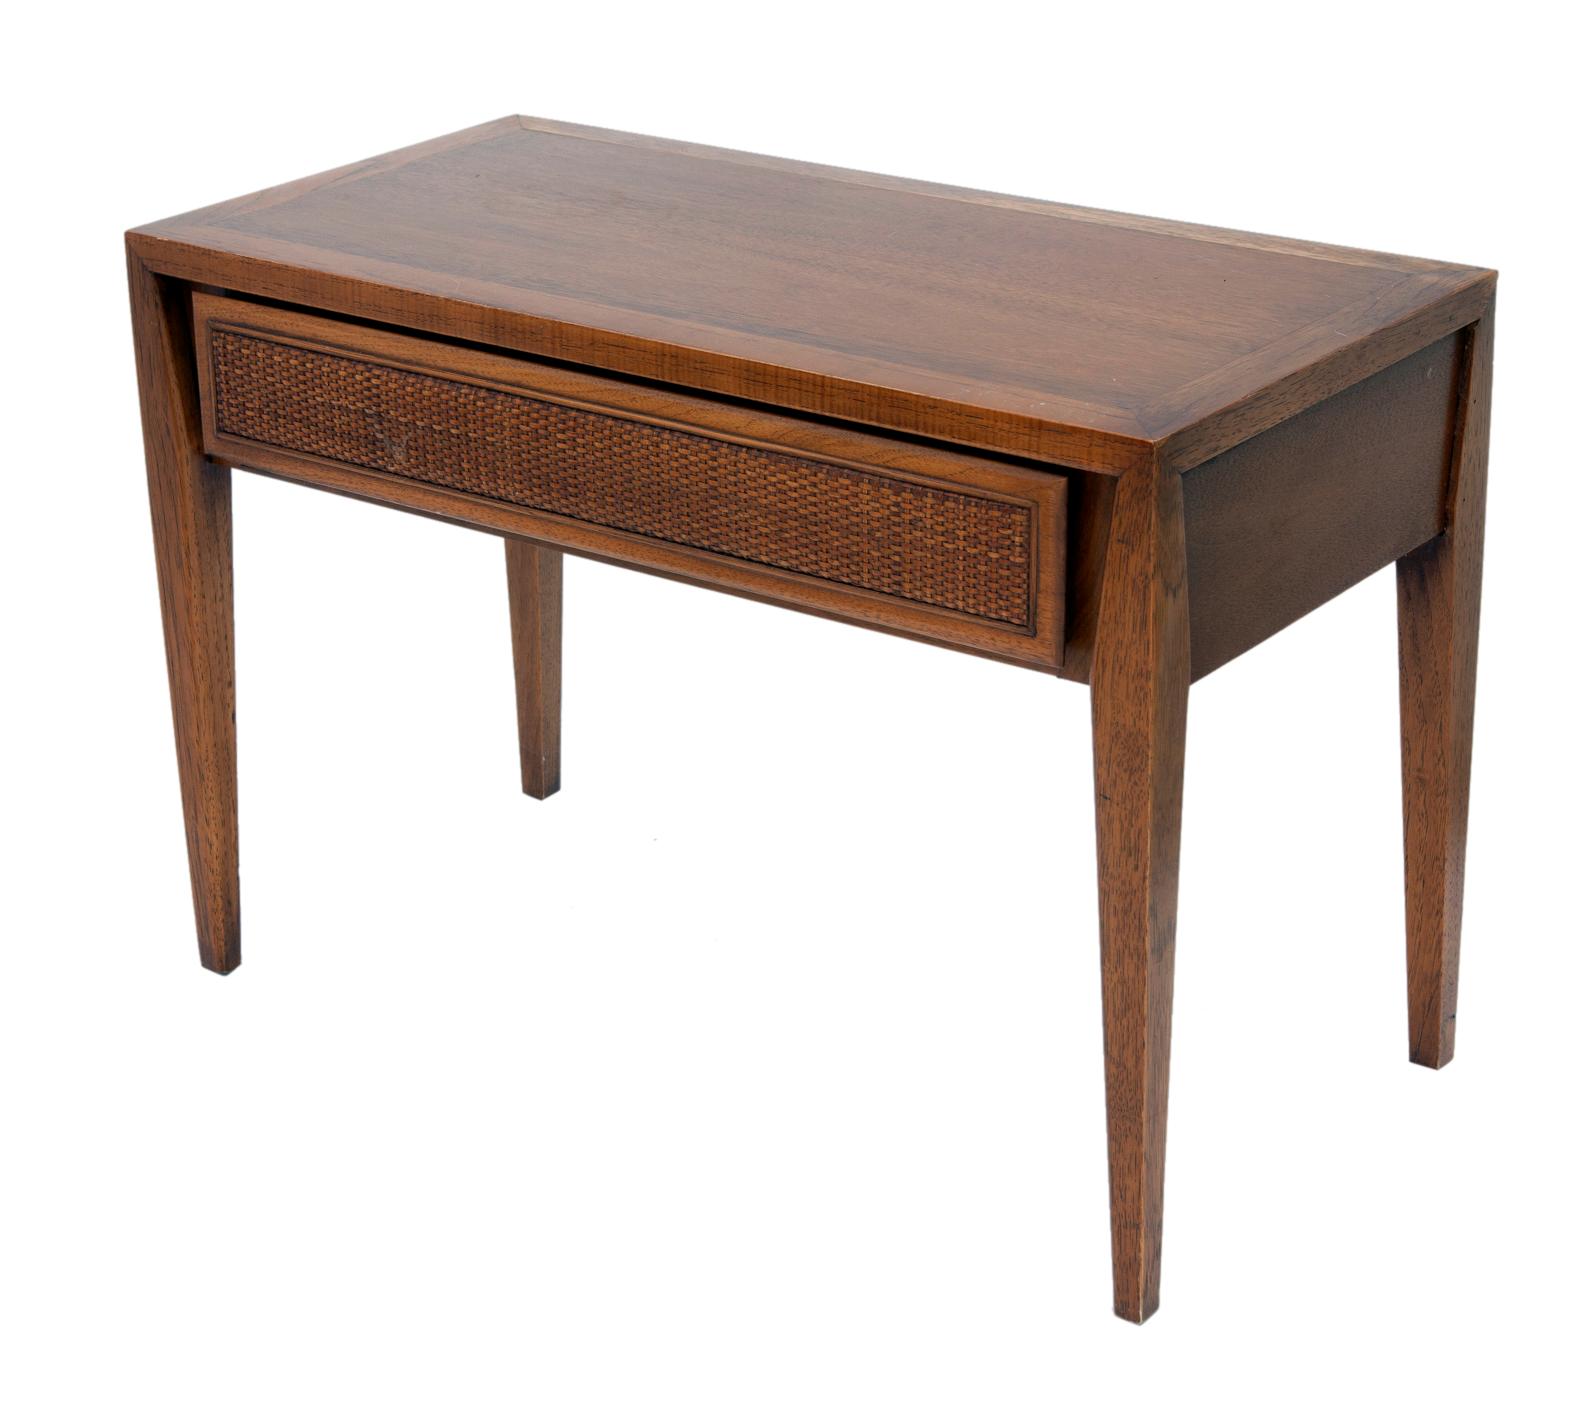 Mid Century Modern Beistelltisch aus Nussbaumholz von Century.
Der Tisch hat vier spitz zulaufende Beine und eine einzelne geflochtene Frontschublade.